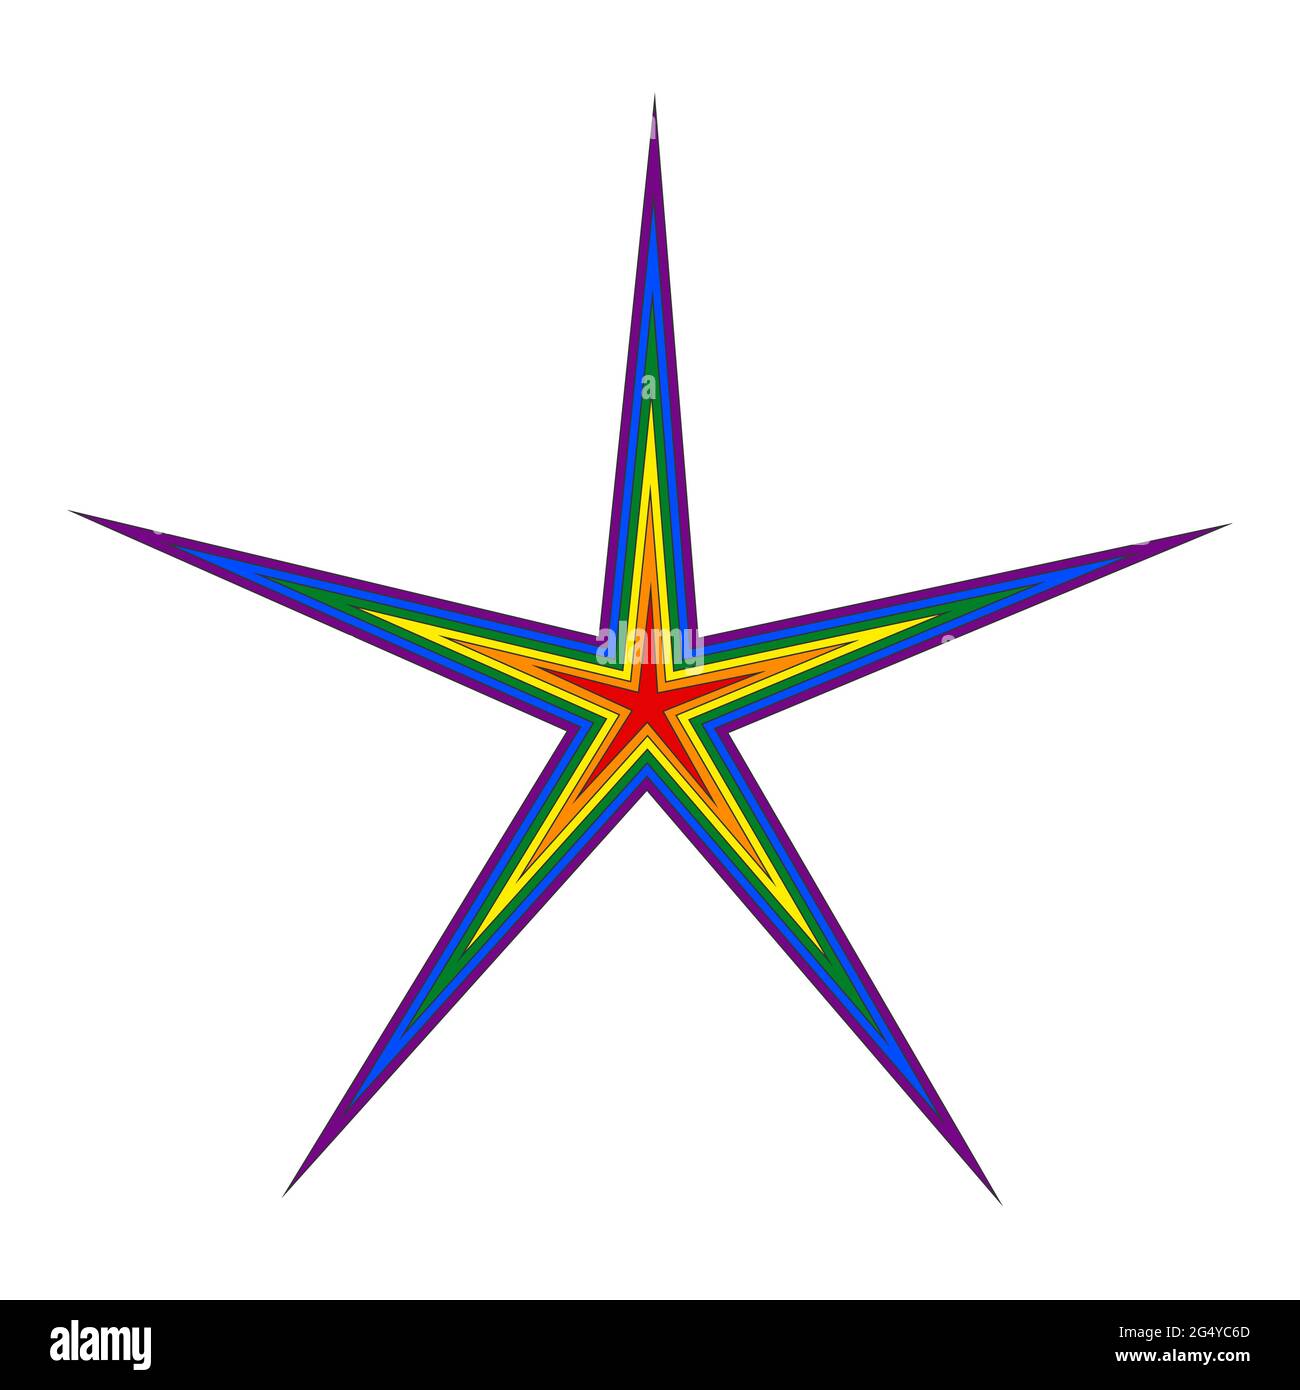 La stella a cinque punte è colorata in rosso, arancione, giallo, verde, blu e viola su sfondo bianco. Simbolismo LGBT. Illustrazione Vettoriale